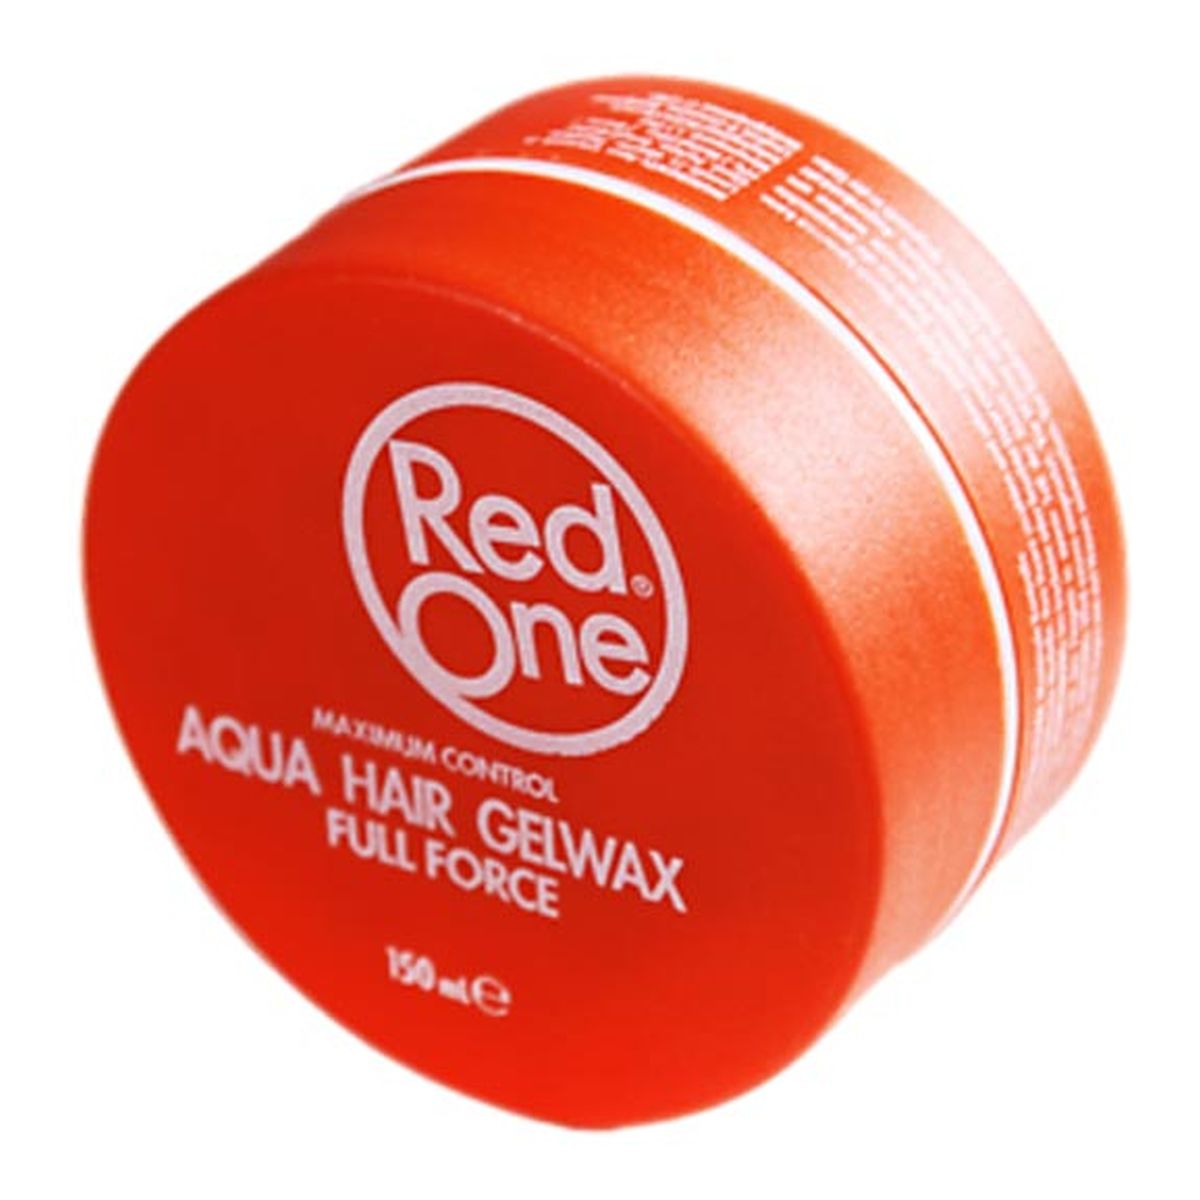 Red One Full Force wosk do włosów Orange 150ml